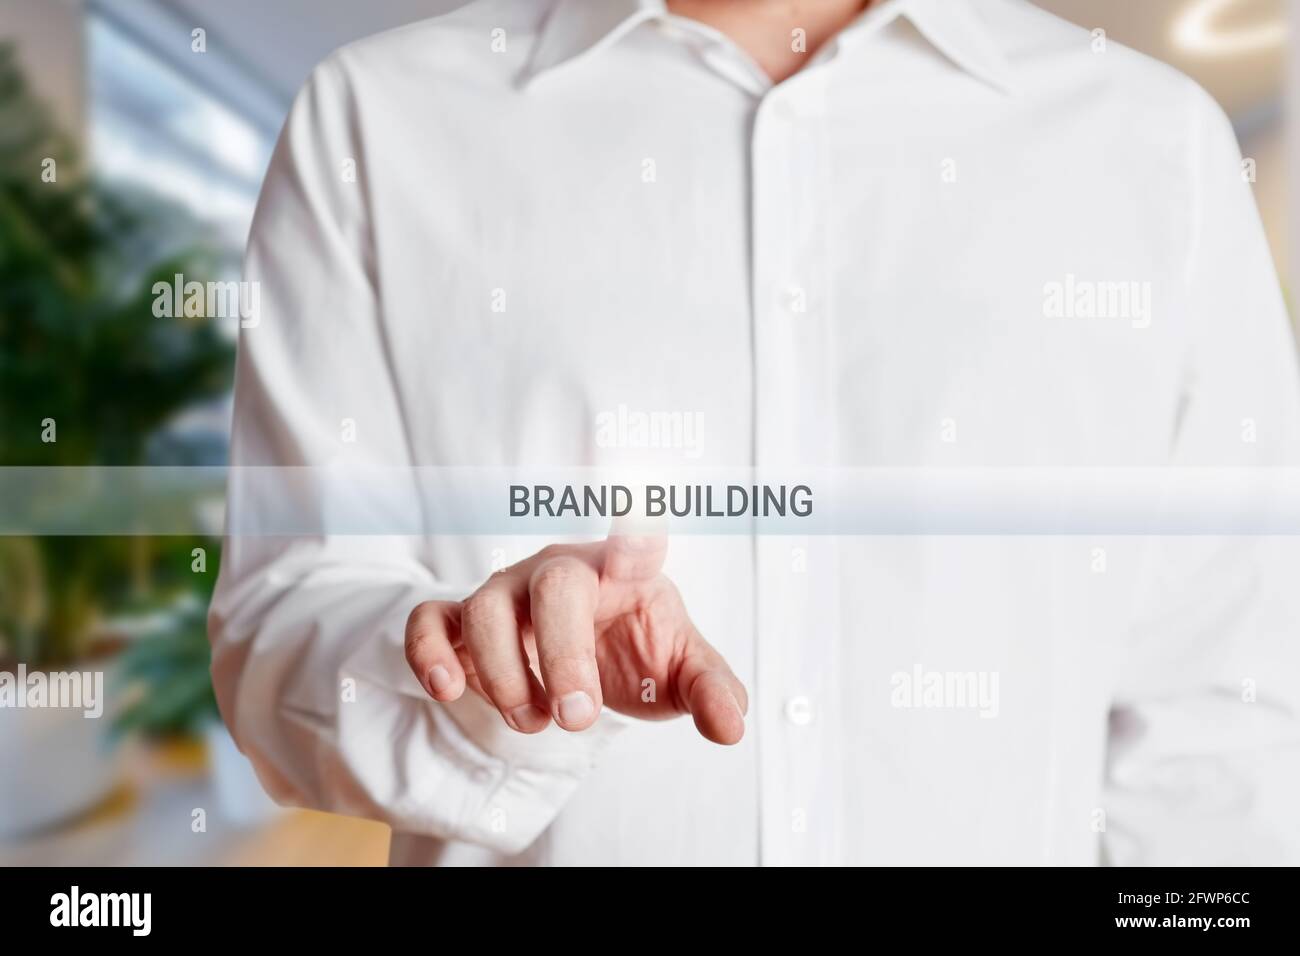 La main d'homme d'affaires appuie sur le bouton de création de marque sur un écran tactile virtuel. Concept de marque, de marketing et de publicité. Banque D'Images